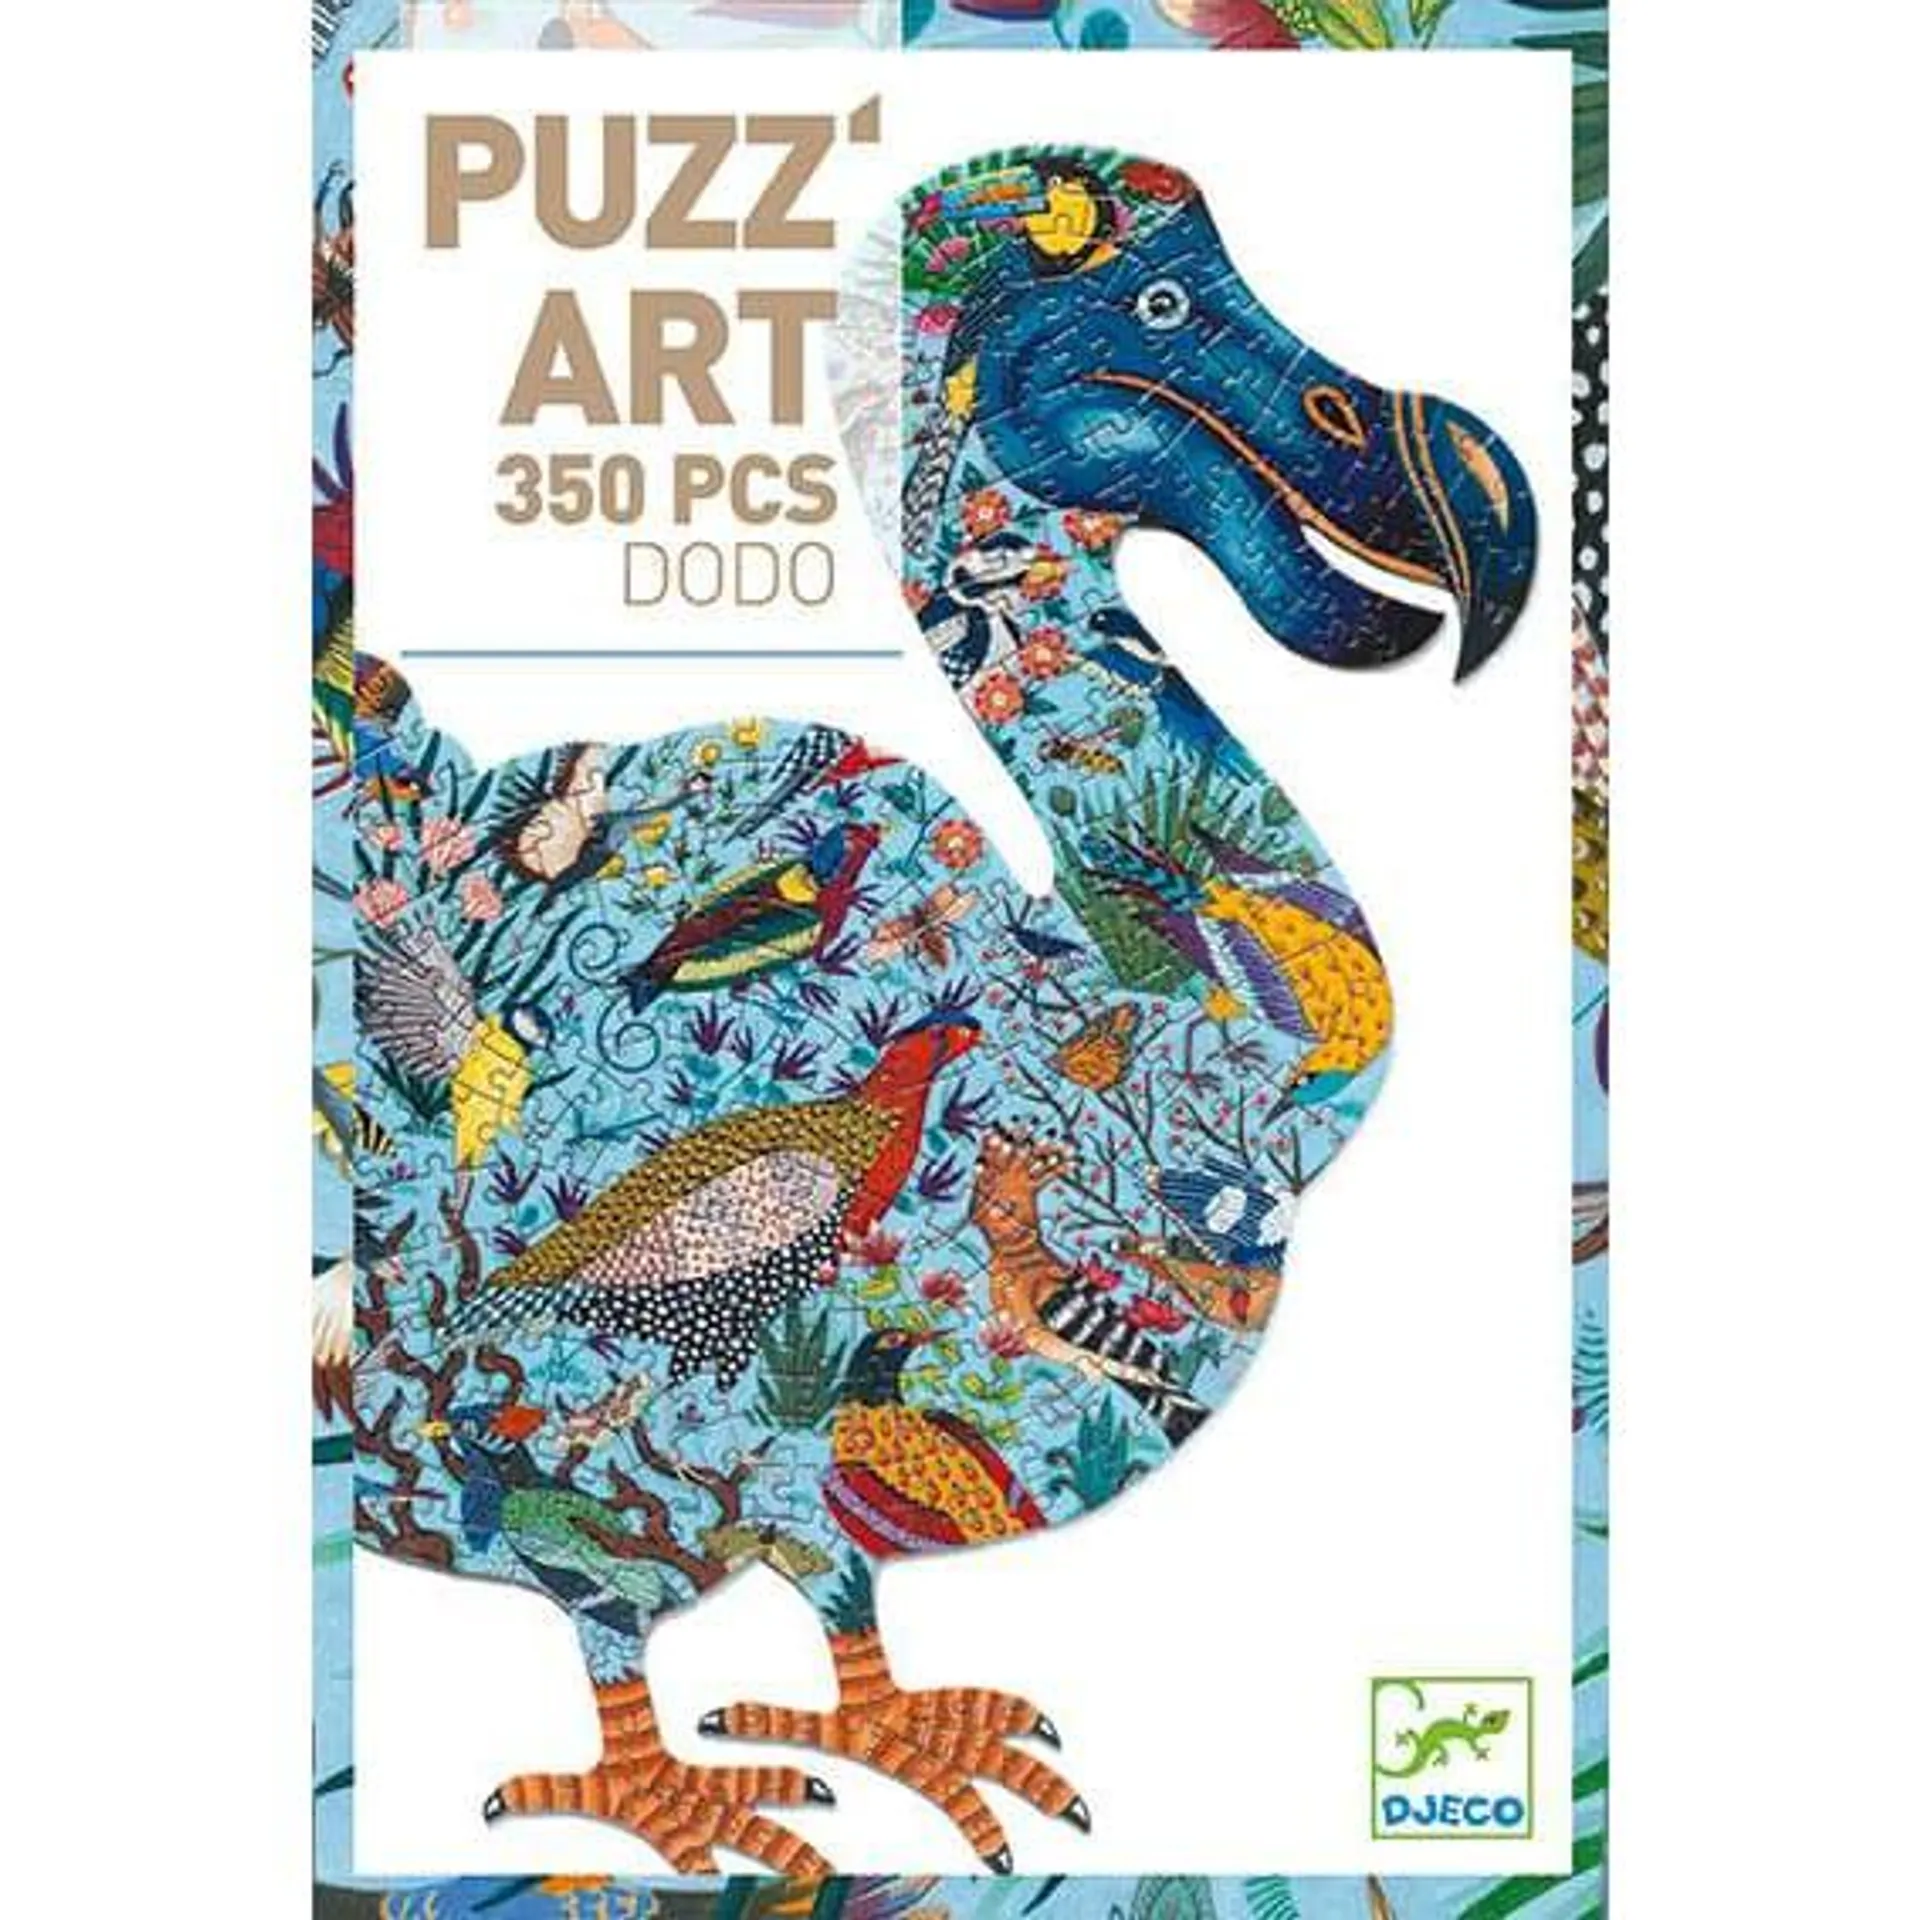 Djeco Puzz'art Dodo 350 pieces